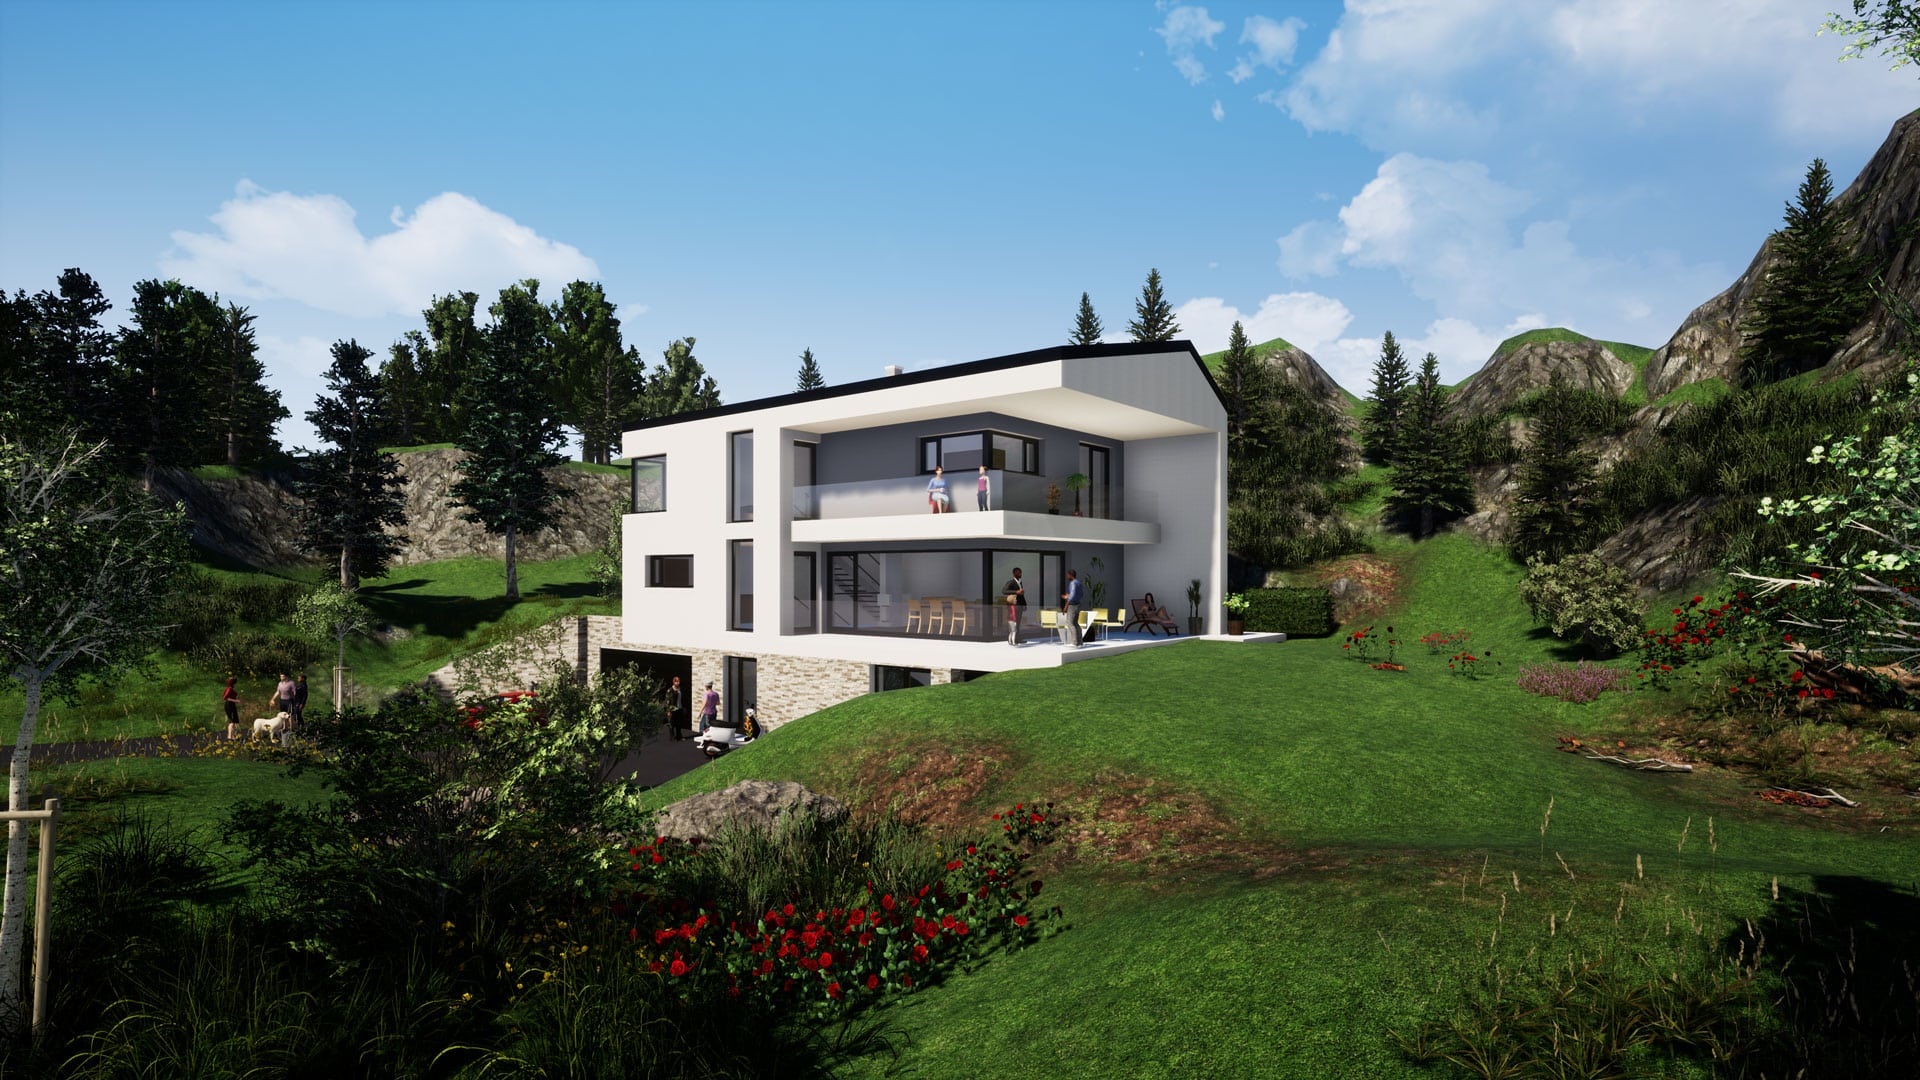 Bauplanung, Baubegleitung 3D-Visualisierung und Baukoordination via planco GmbH für ein modernes Einfamilienhaus mit Satteldach, Balkone mit Glasgeländer und Verglasung.